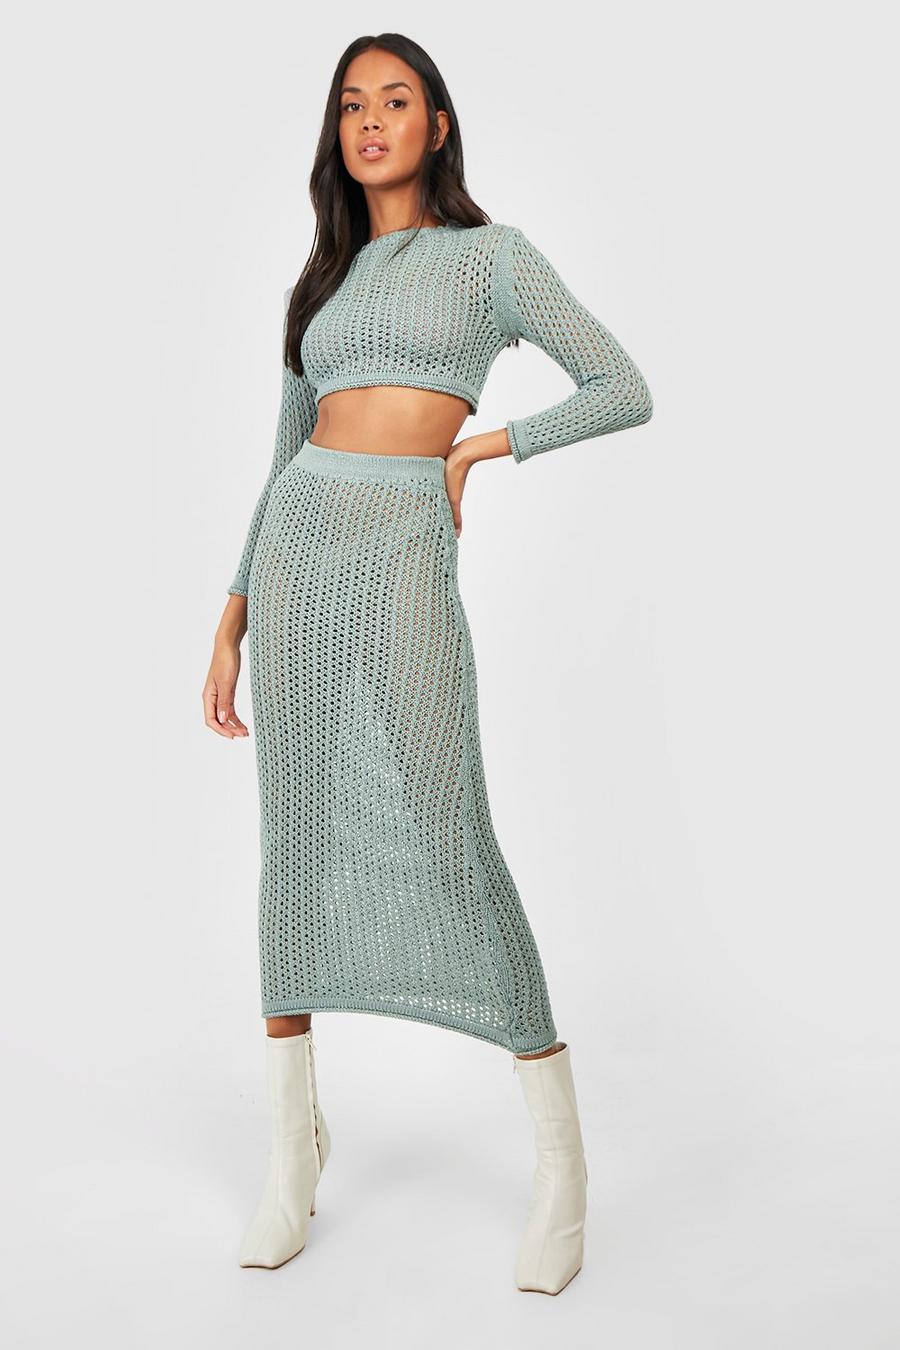 Teal green Crochet Maxi Skirt Two-Piece